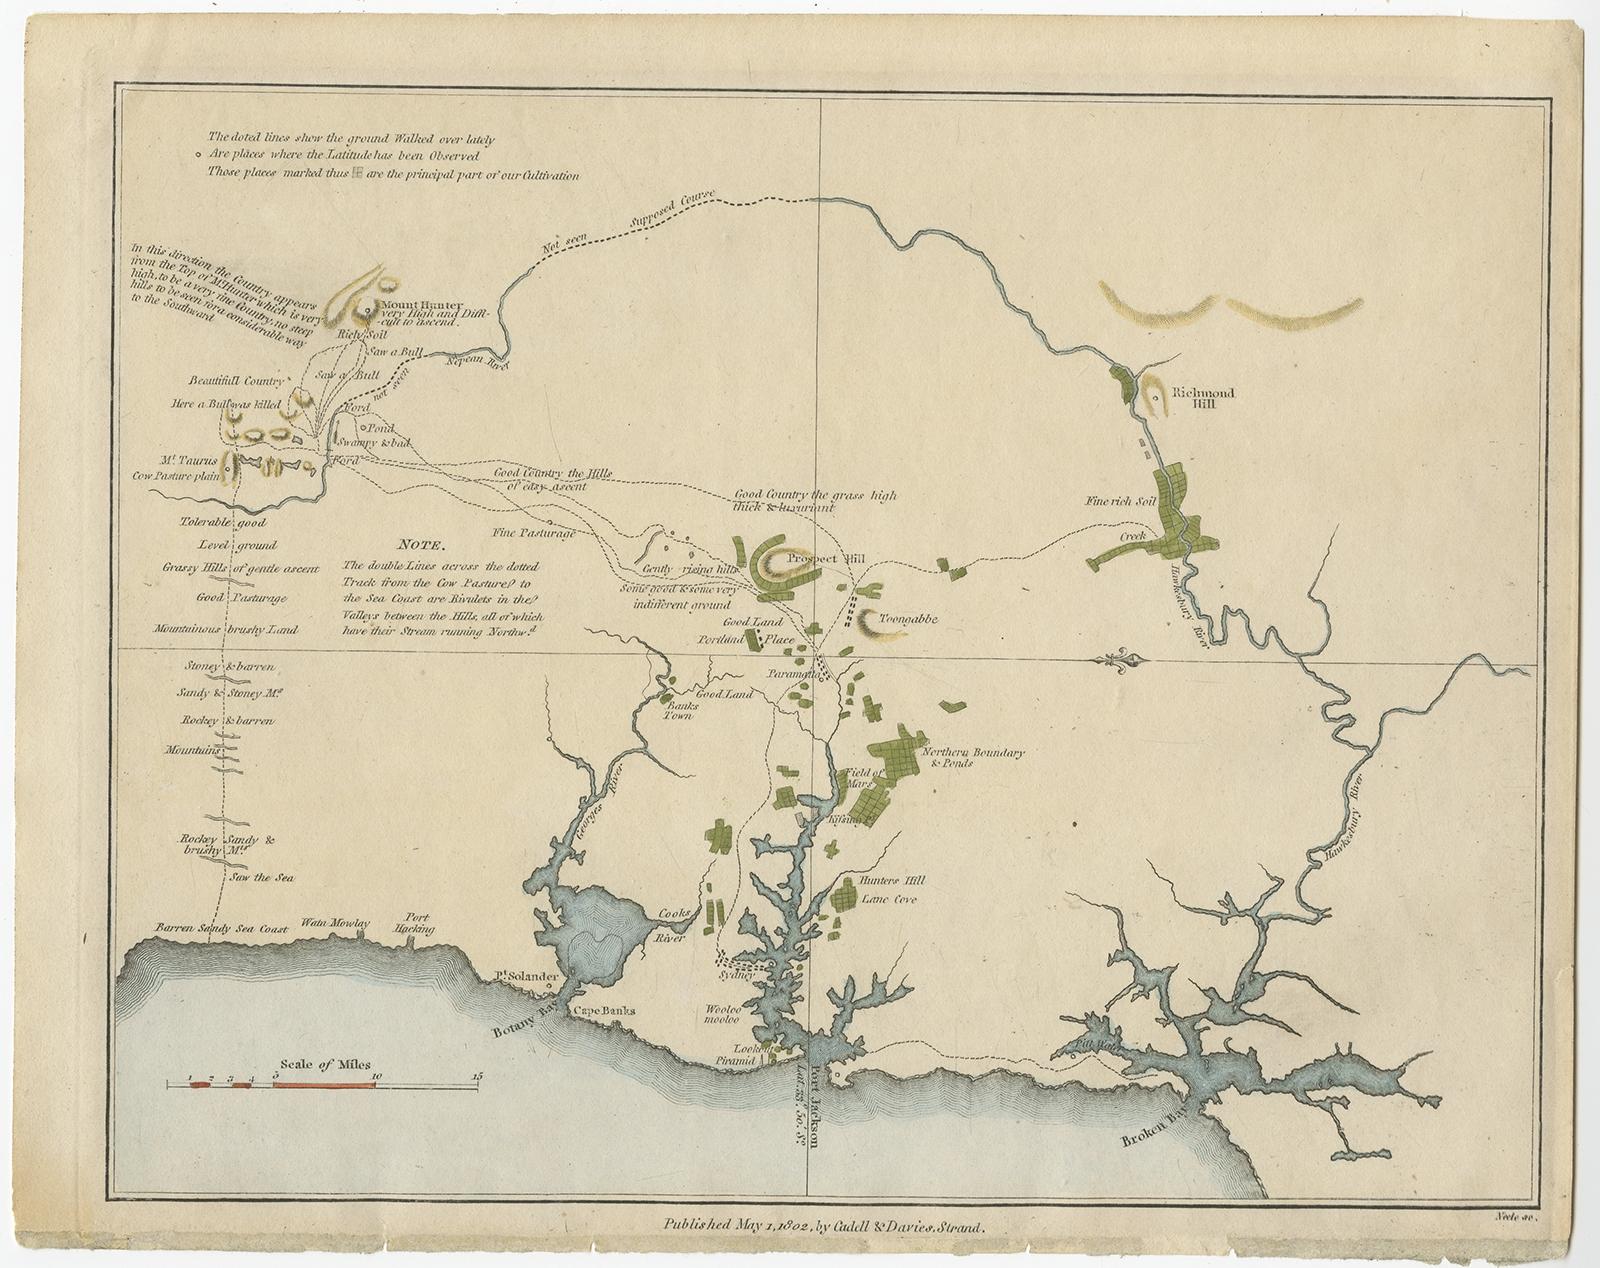 Carte intéressante des trois ports de Botany Bay, Port Jackson et Broken Bay montrant les terres cultivées par les colons. Au début de la colonisation de l'Australie, il était primordial d'établir des réserves alimentaires suffisantes, voire